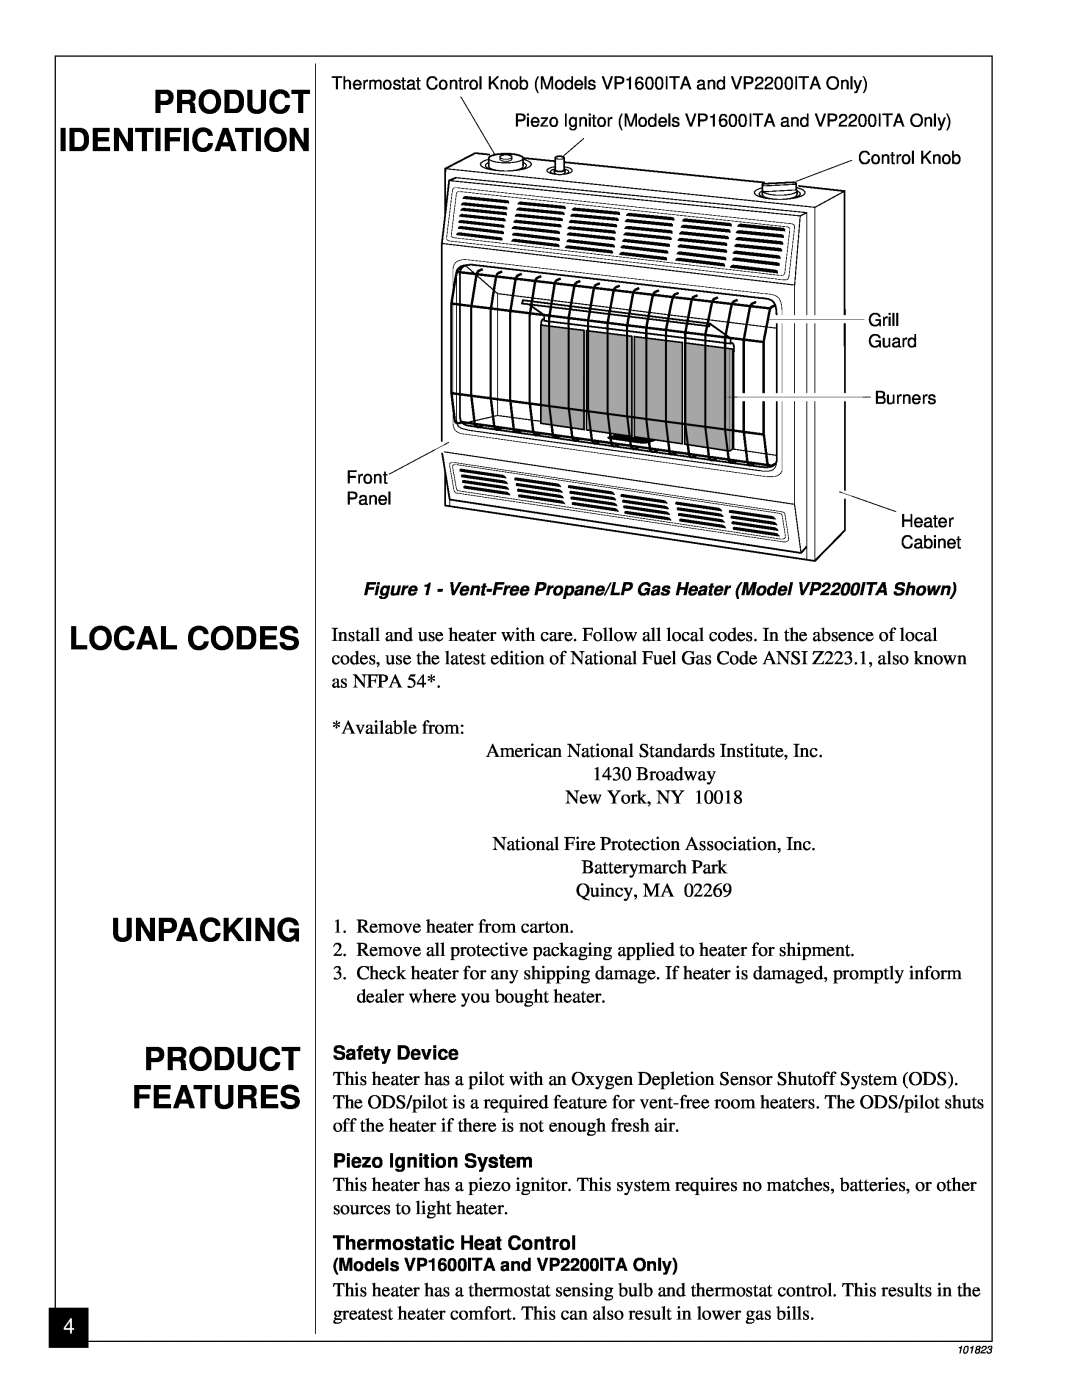 Vanguard Heating VP2600D, VP1600ITA, VP1600D, VP2200ITA Product, Identification, Local Codes, Unpacking, Features 